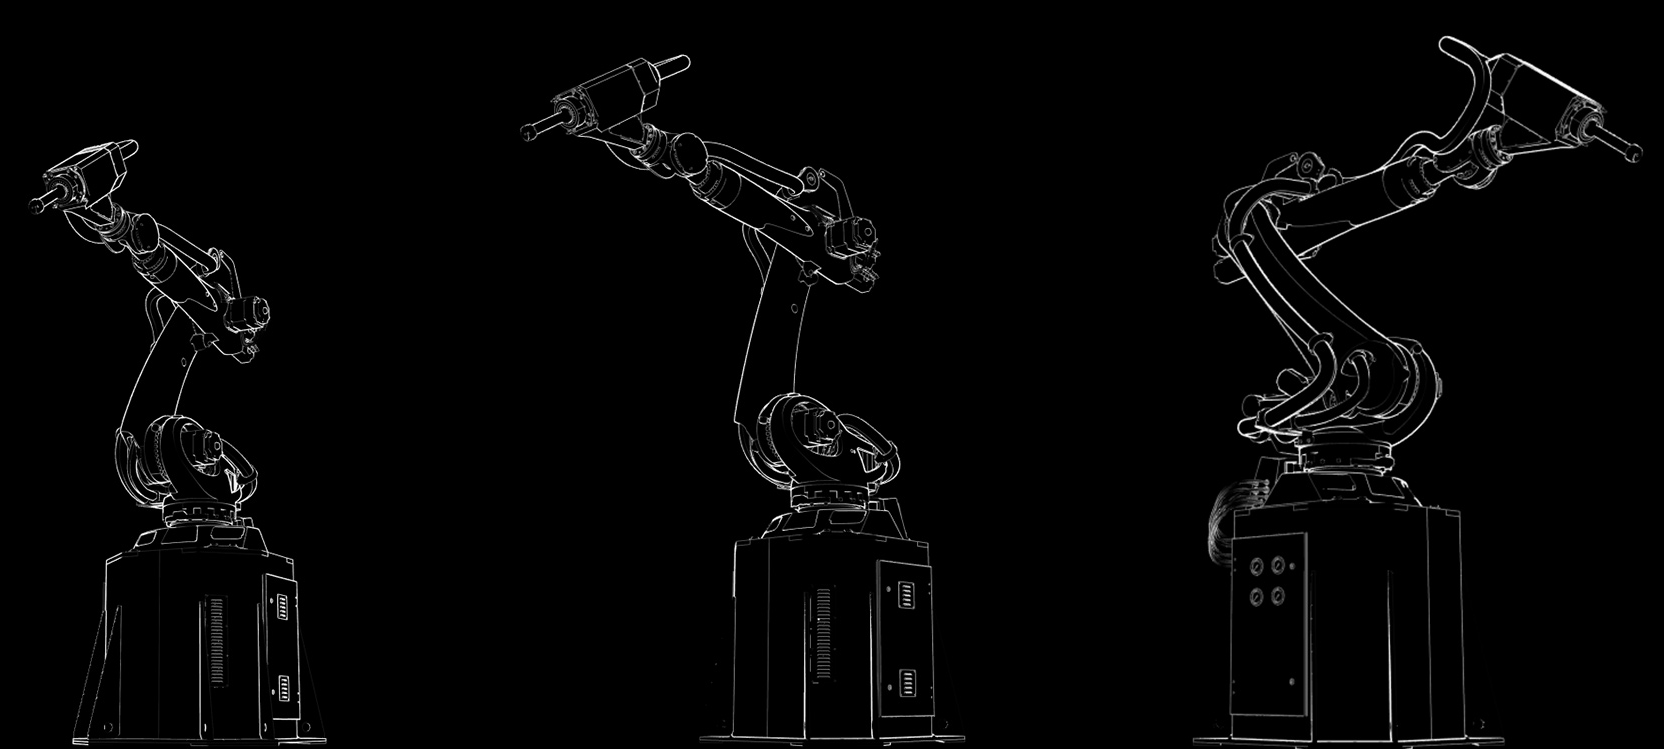 Робот-скульптор может делать точные копии мировых шедевров